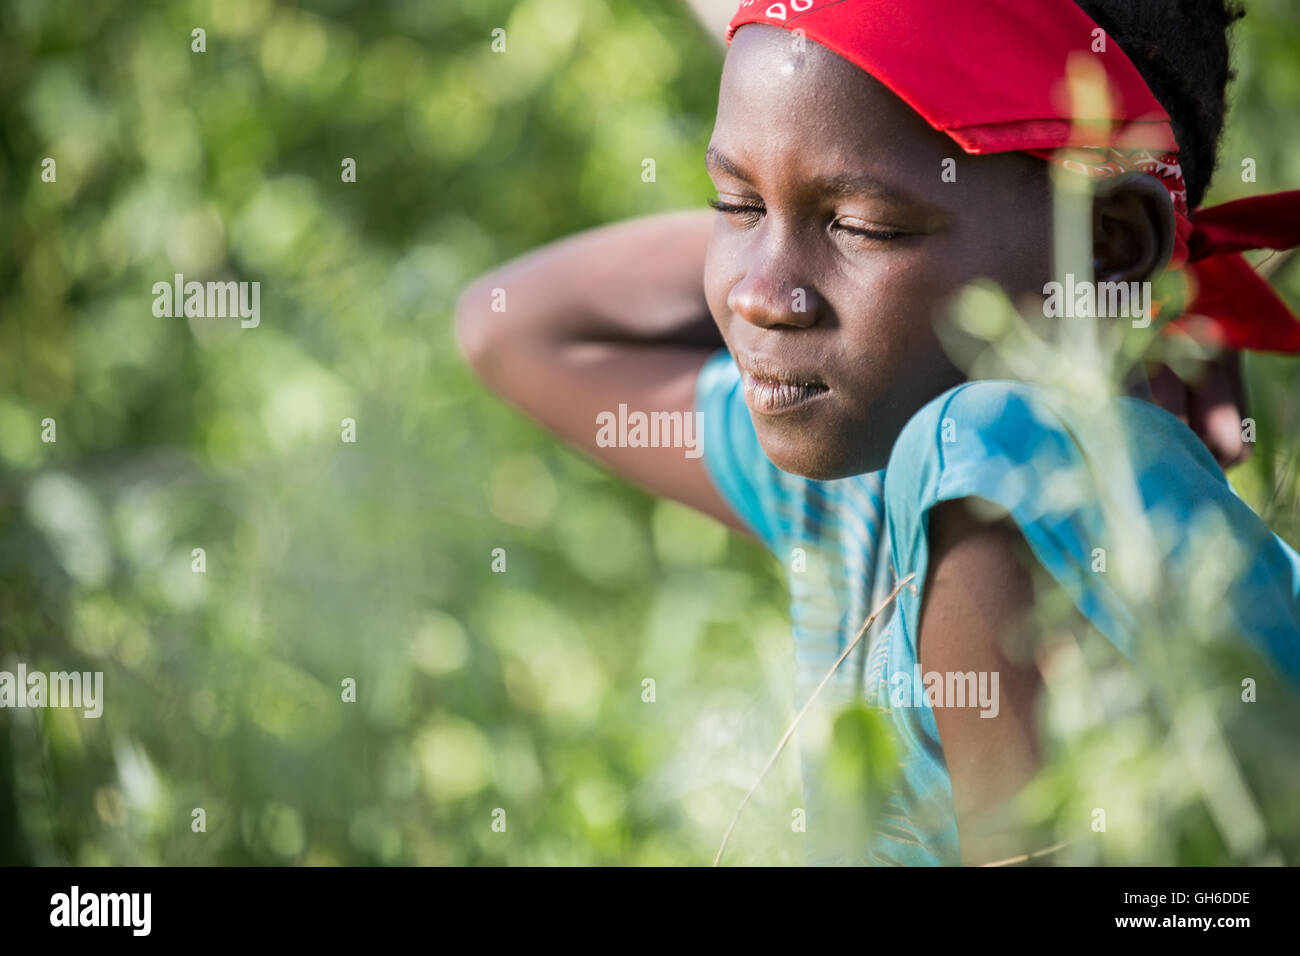 Daydream - Jeune Fille de la tribu Nyangatom (Bume) en Éthiopie. Banque D'Images